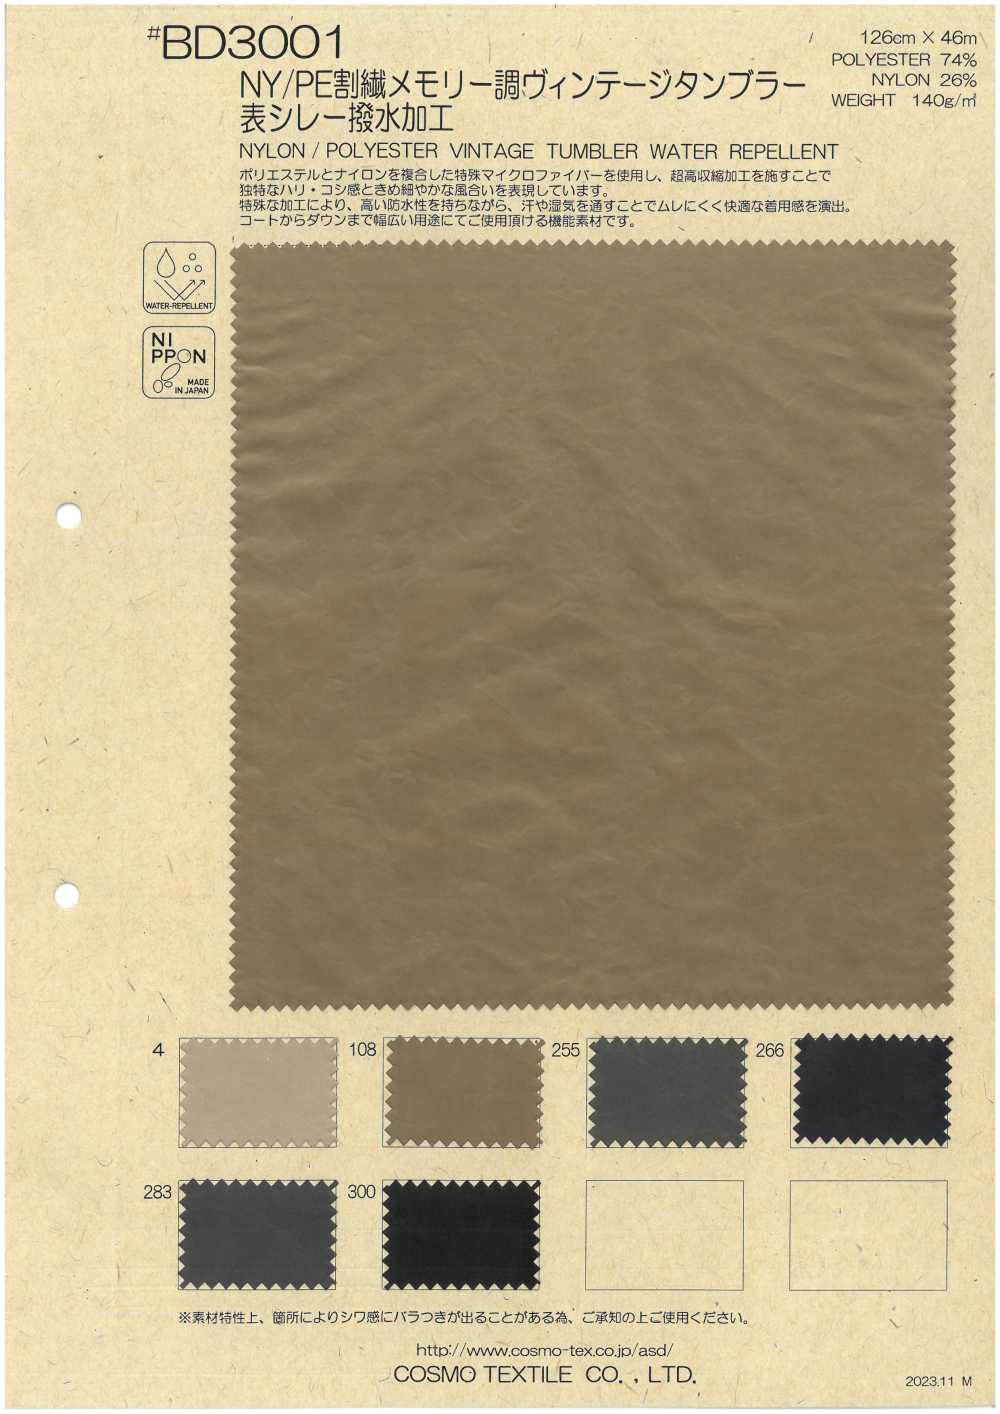 BD3001 Surface De Verre Vintage à Mémoire De Forme Divisée En Nylon/polyester Avec Traitement Hydrofuge[Fabrication De Textile] COSMO TEXTILE